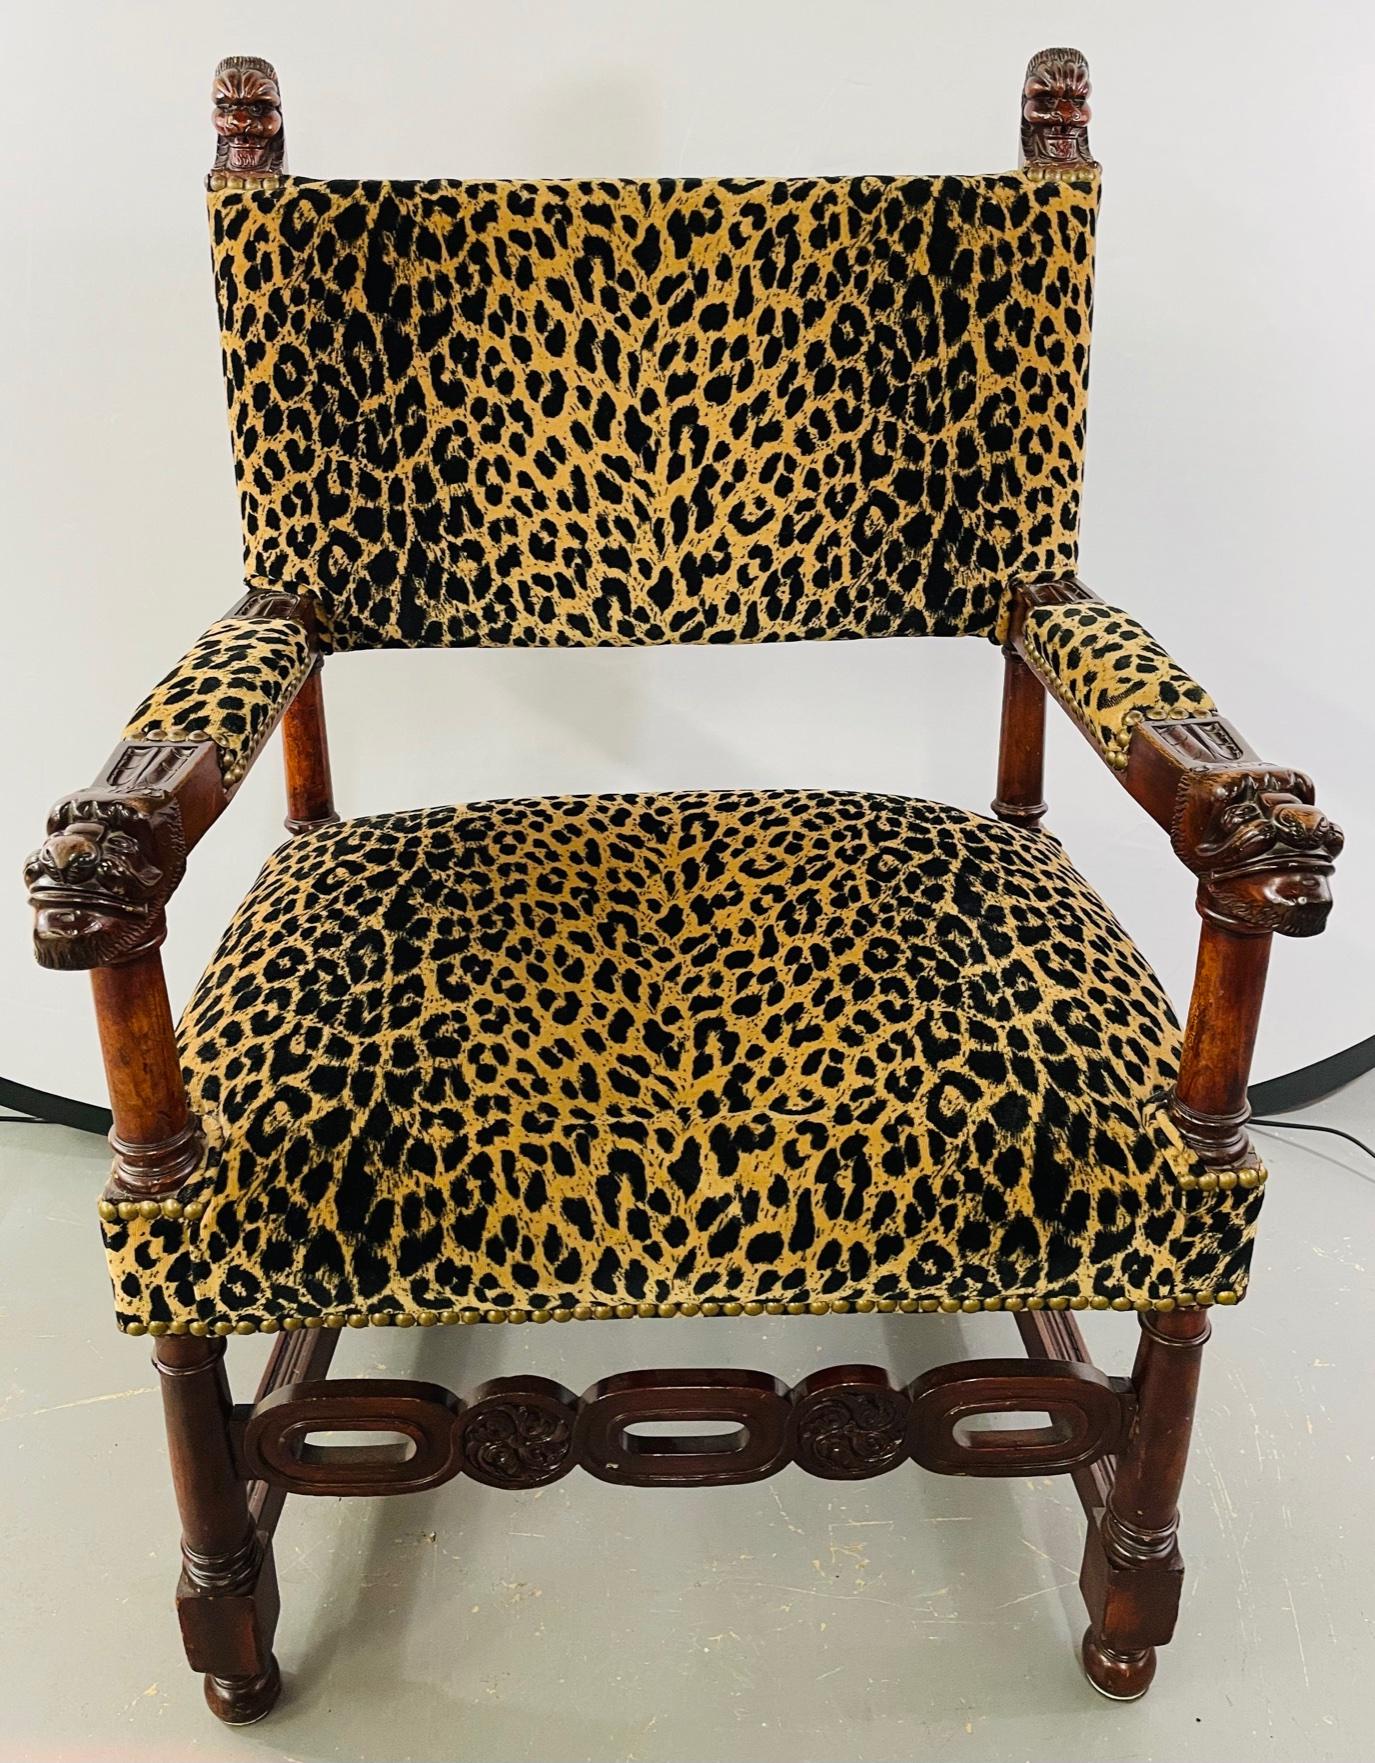 Ein seltener Stuhl aus dem späten 19. Jahrhundert im viktorianischen Stil der Gotik. Der Stuhl ist aus massivem Mahagoniholz gefertigt, das kunstvoll mit gotischen Motiven geschnitzt ist, die auf beiden Armlehnen und auf jeder Seite der Rückenlehne